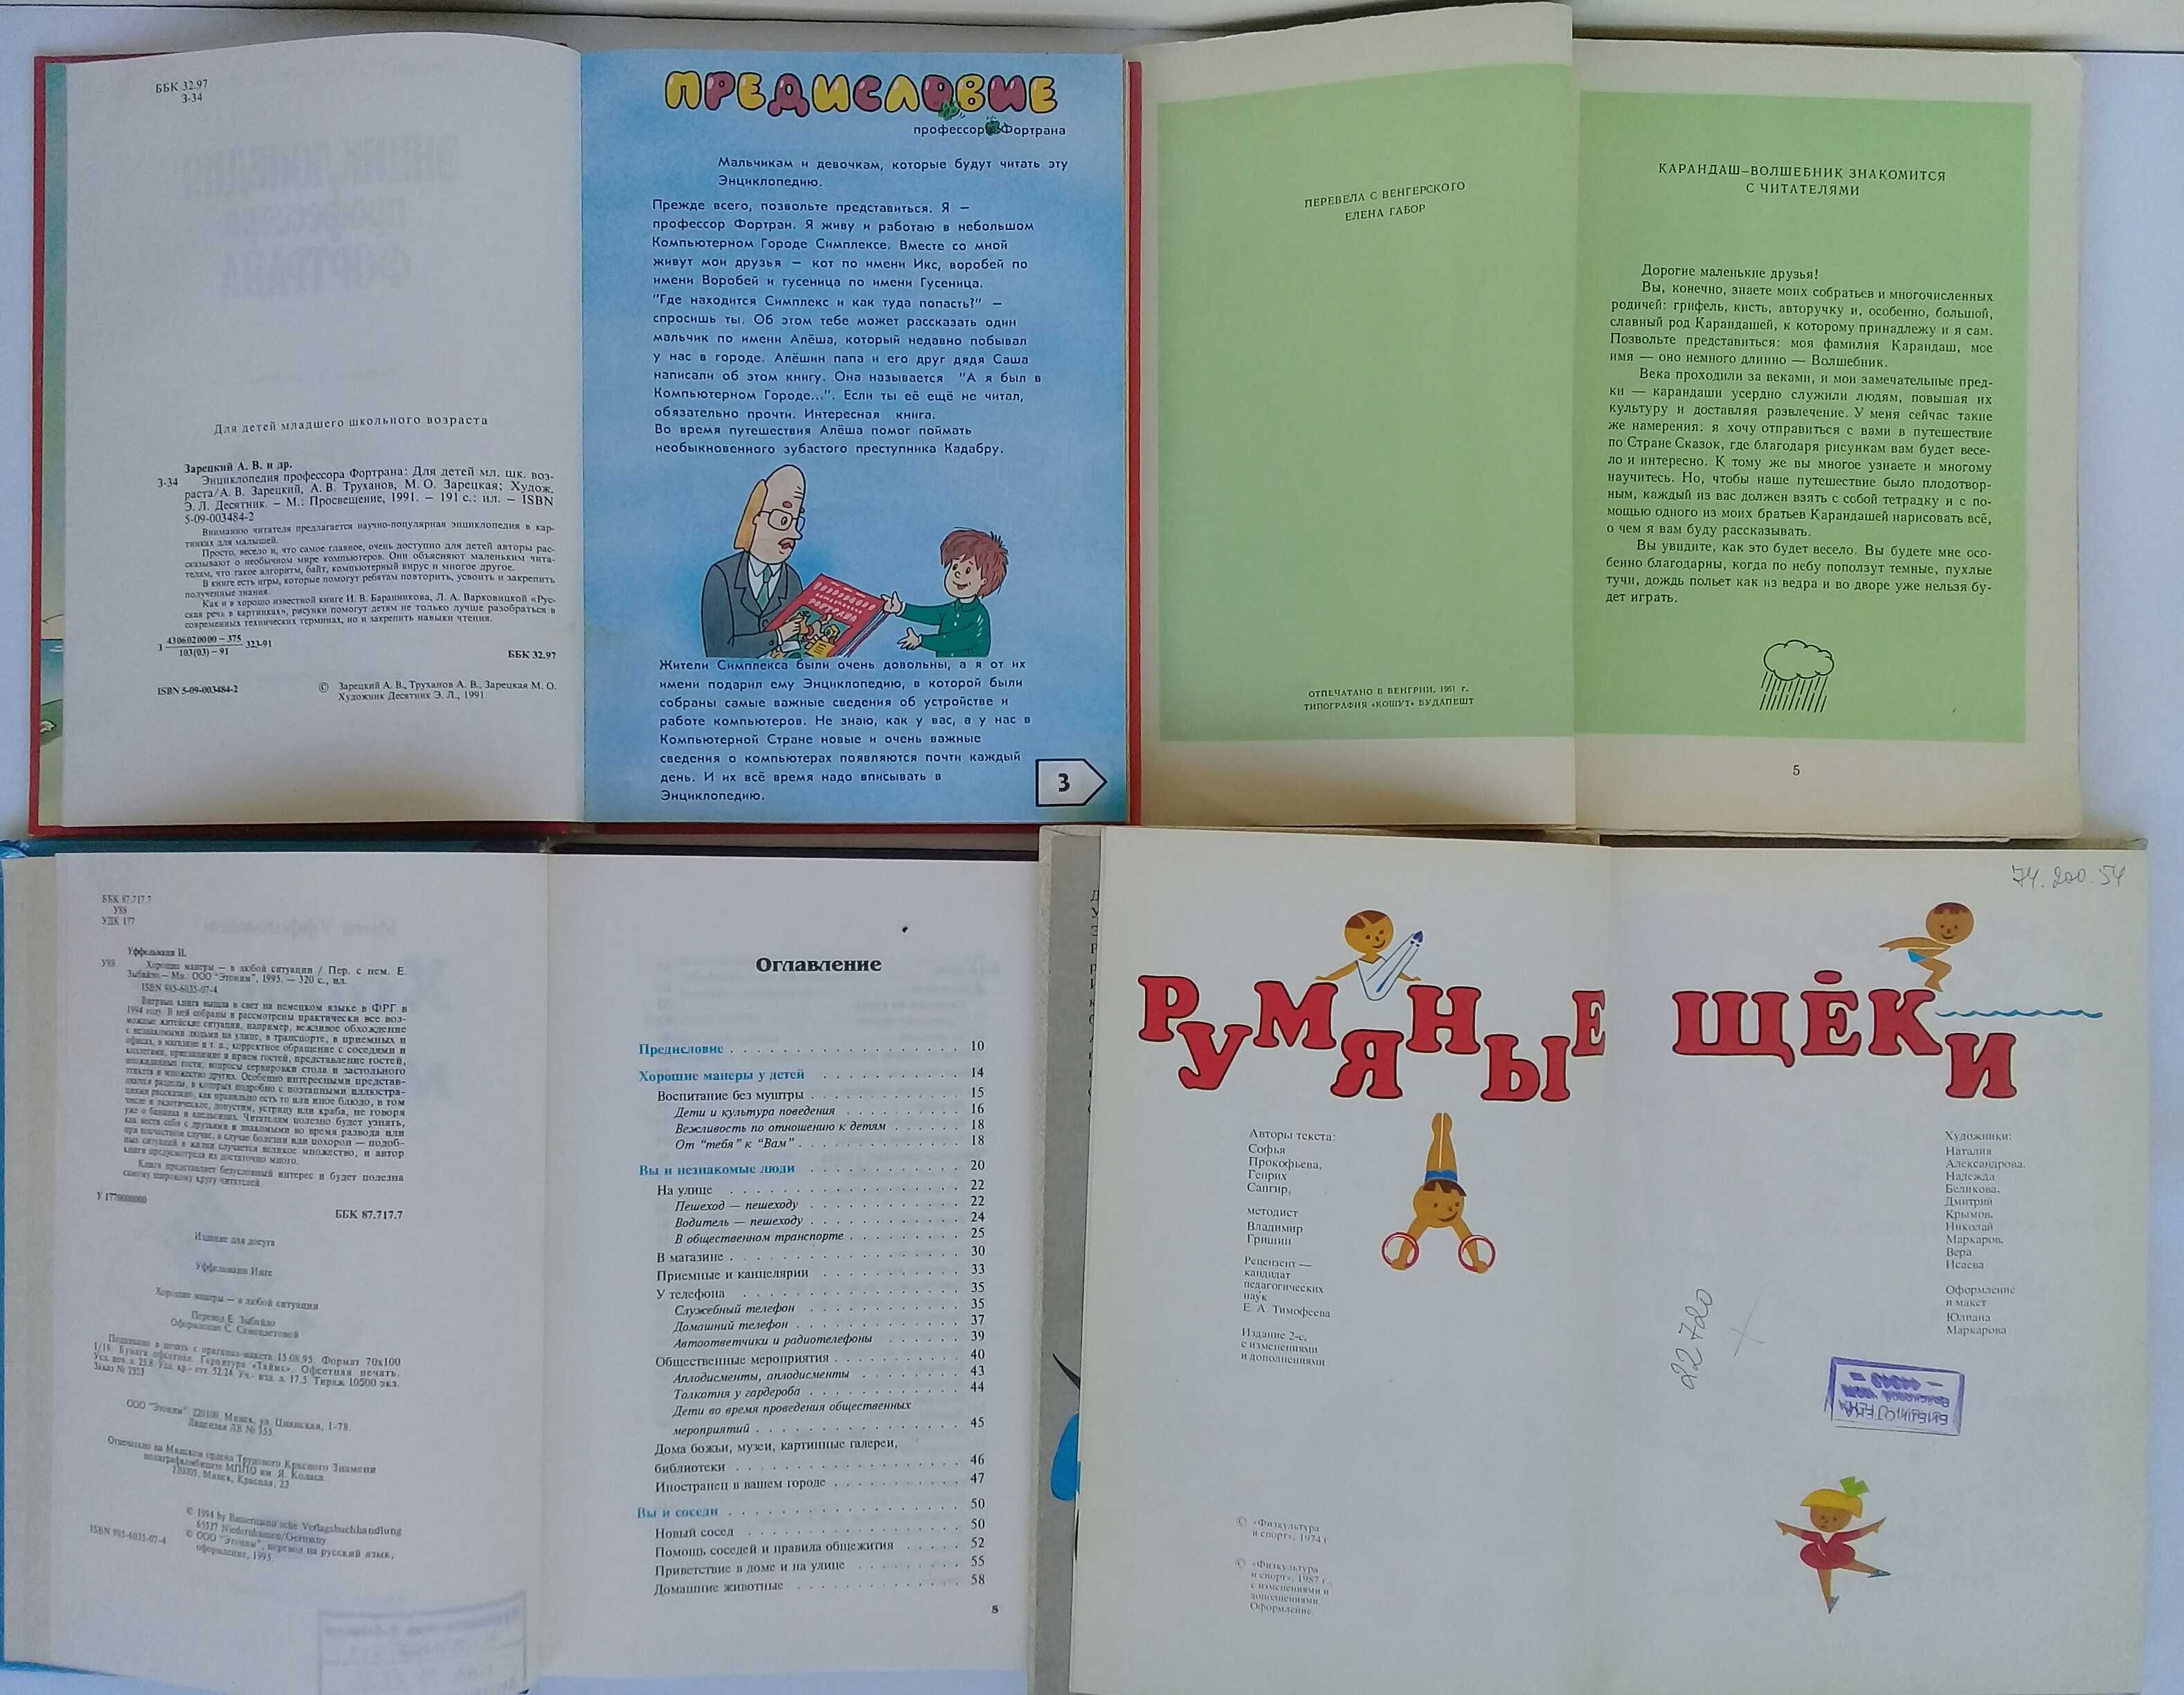 Книги для детей на русском языке